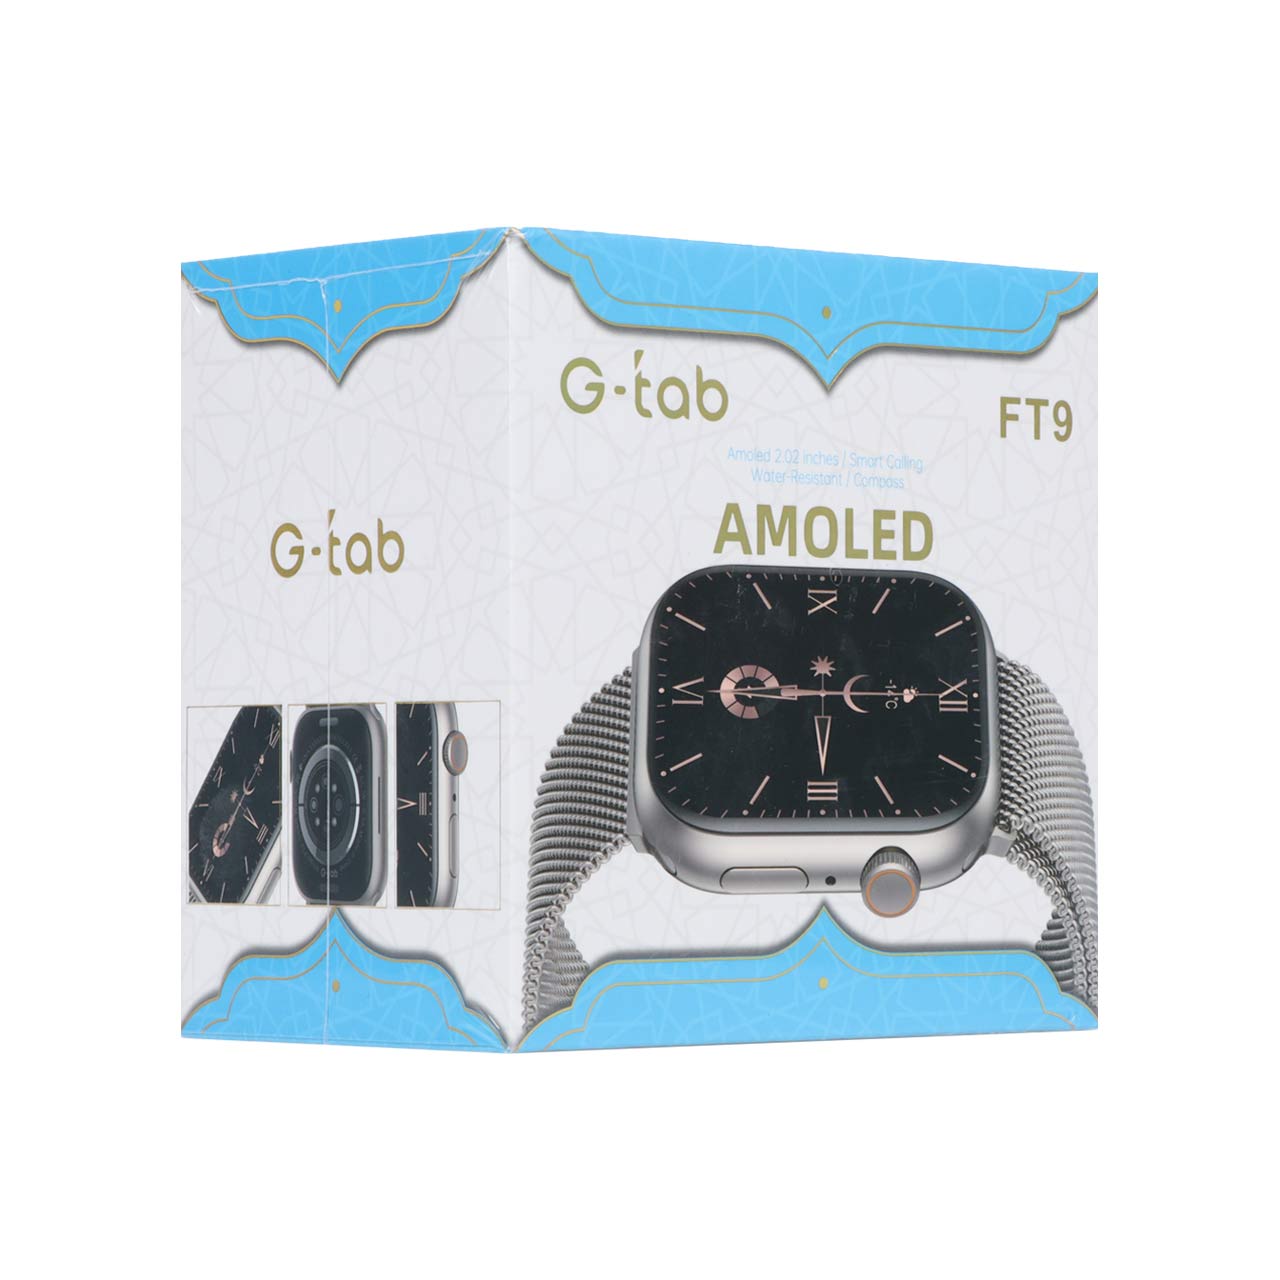 ساعت هوشمند G-tab مدل FT9